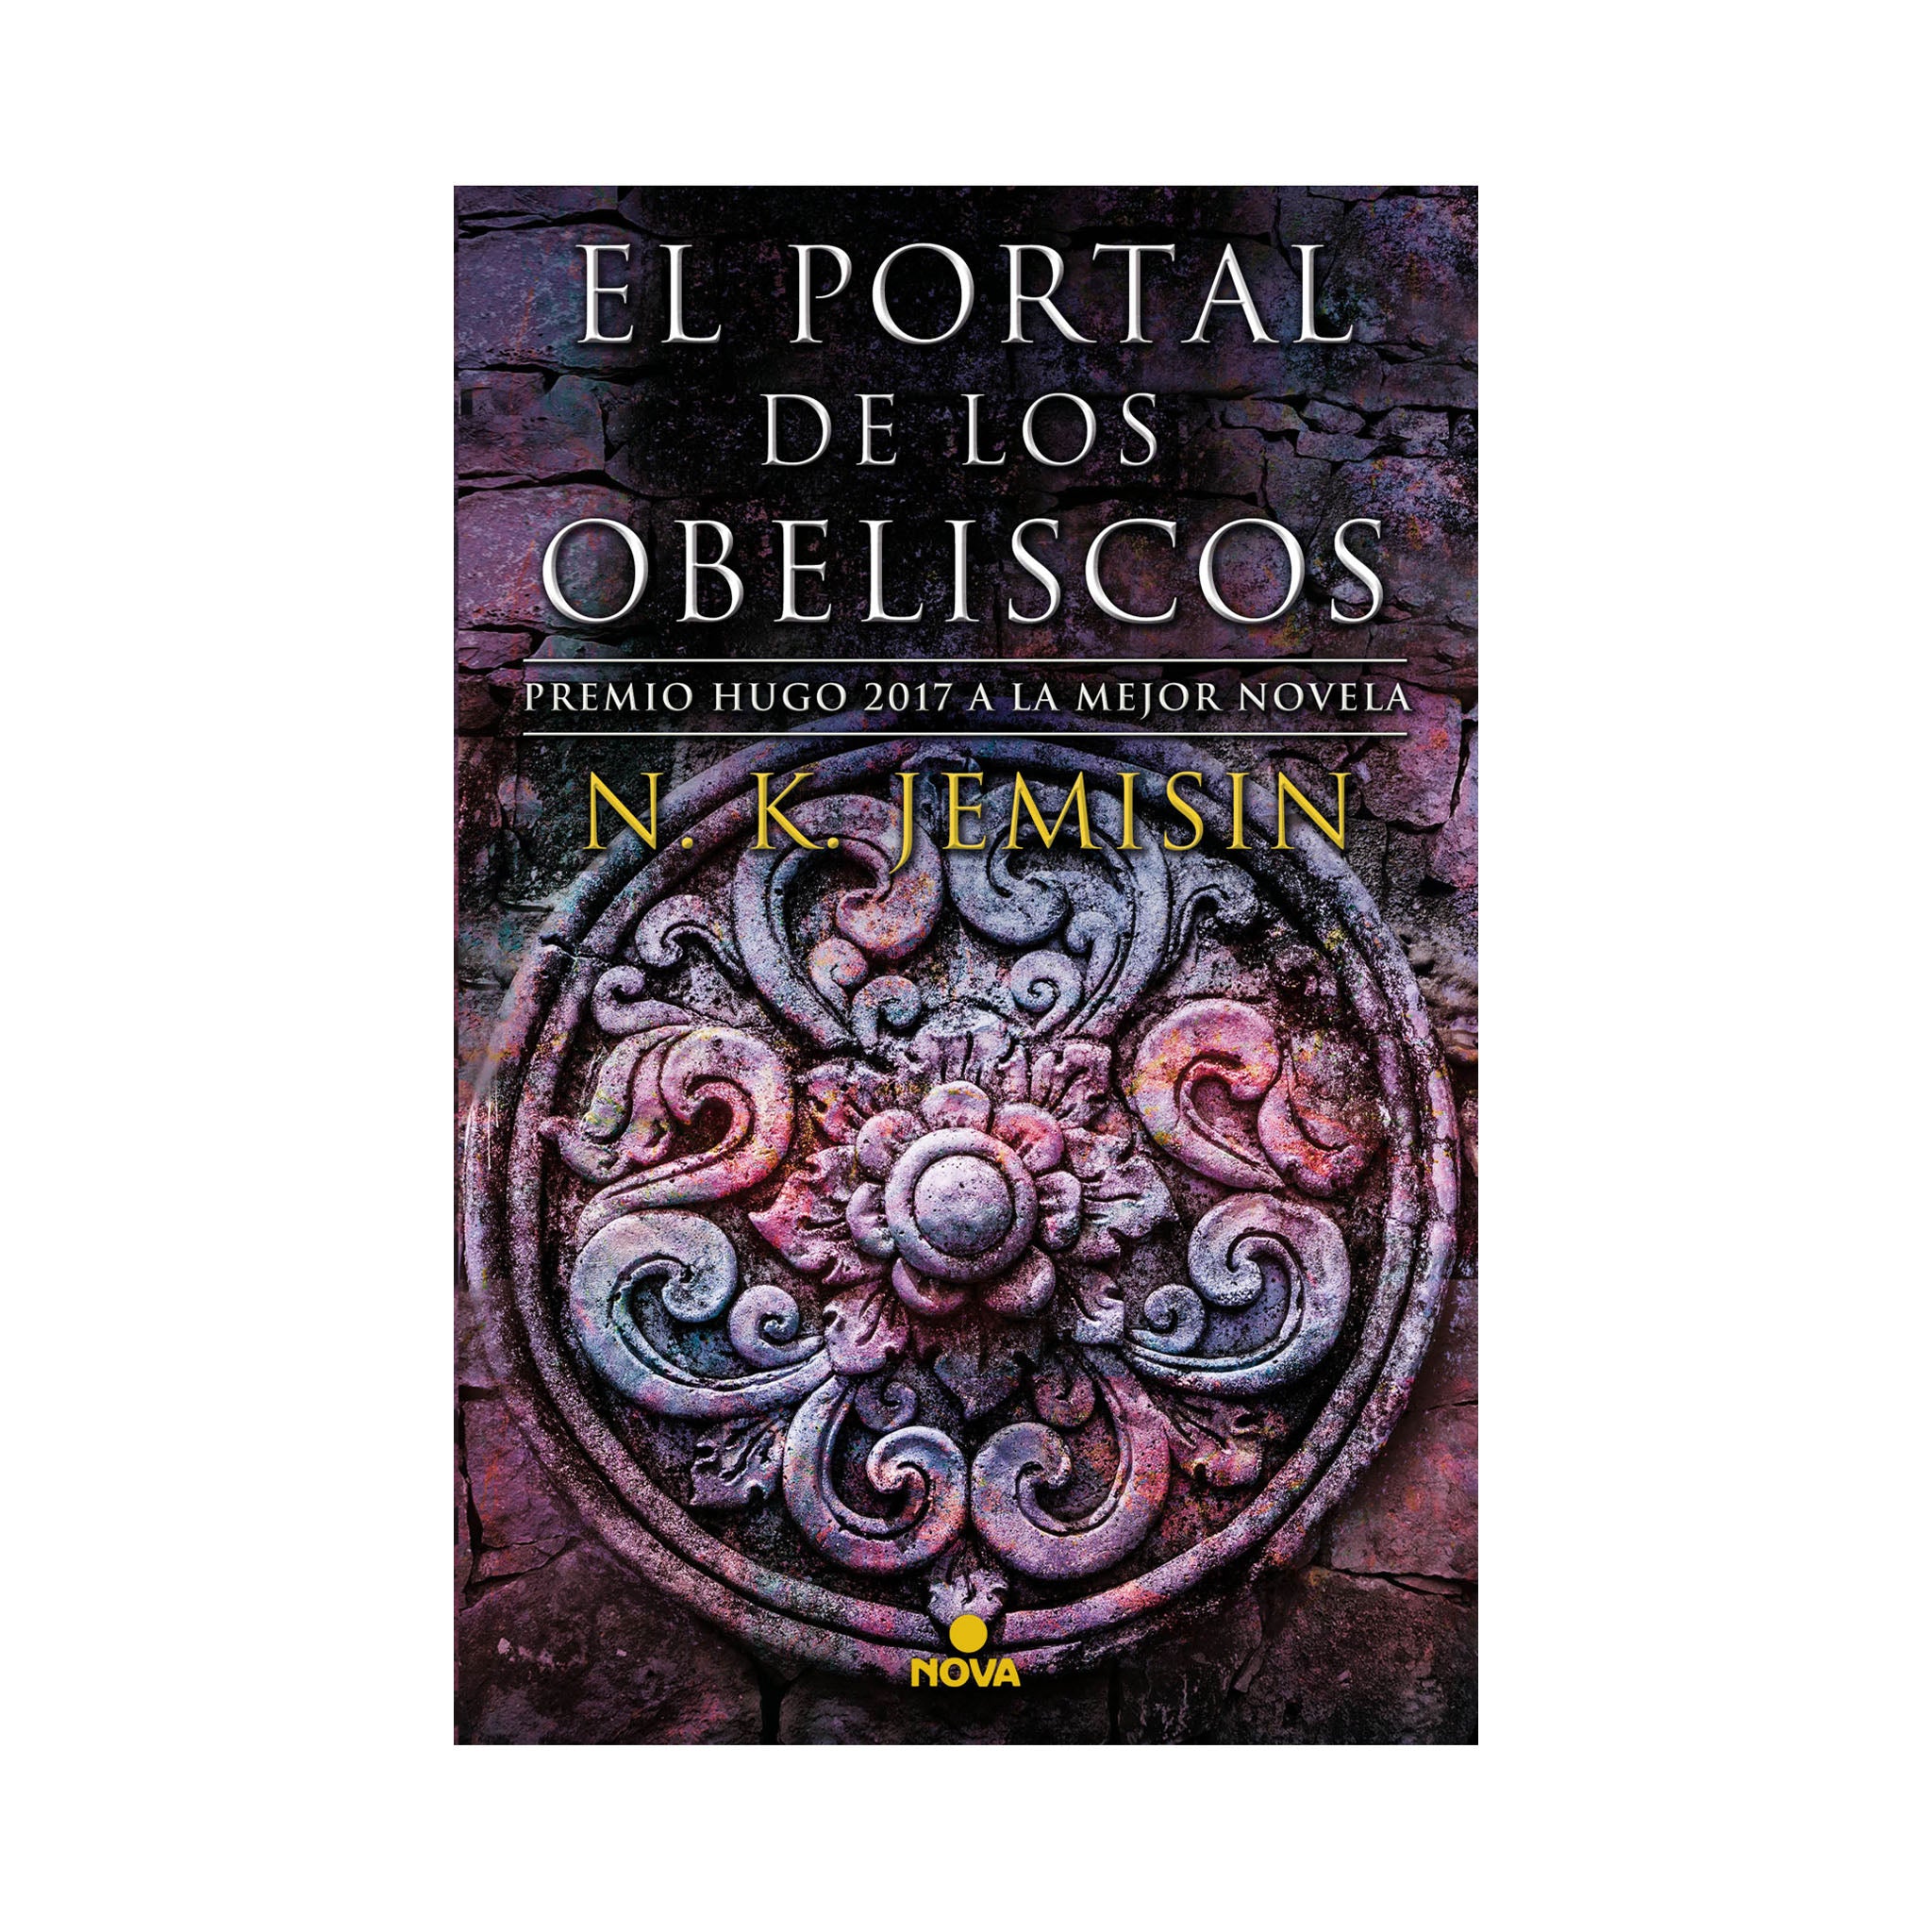 El portal de los obeliscos